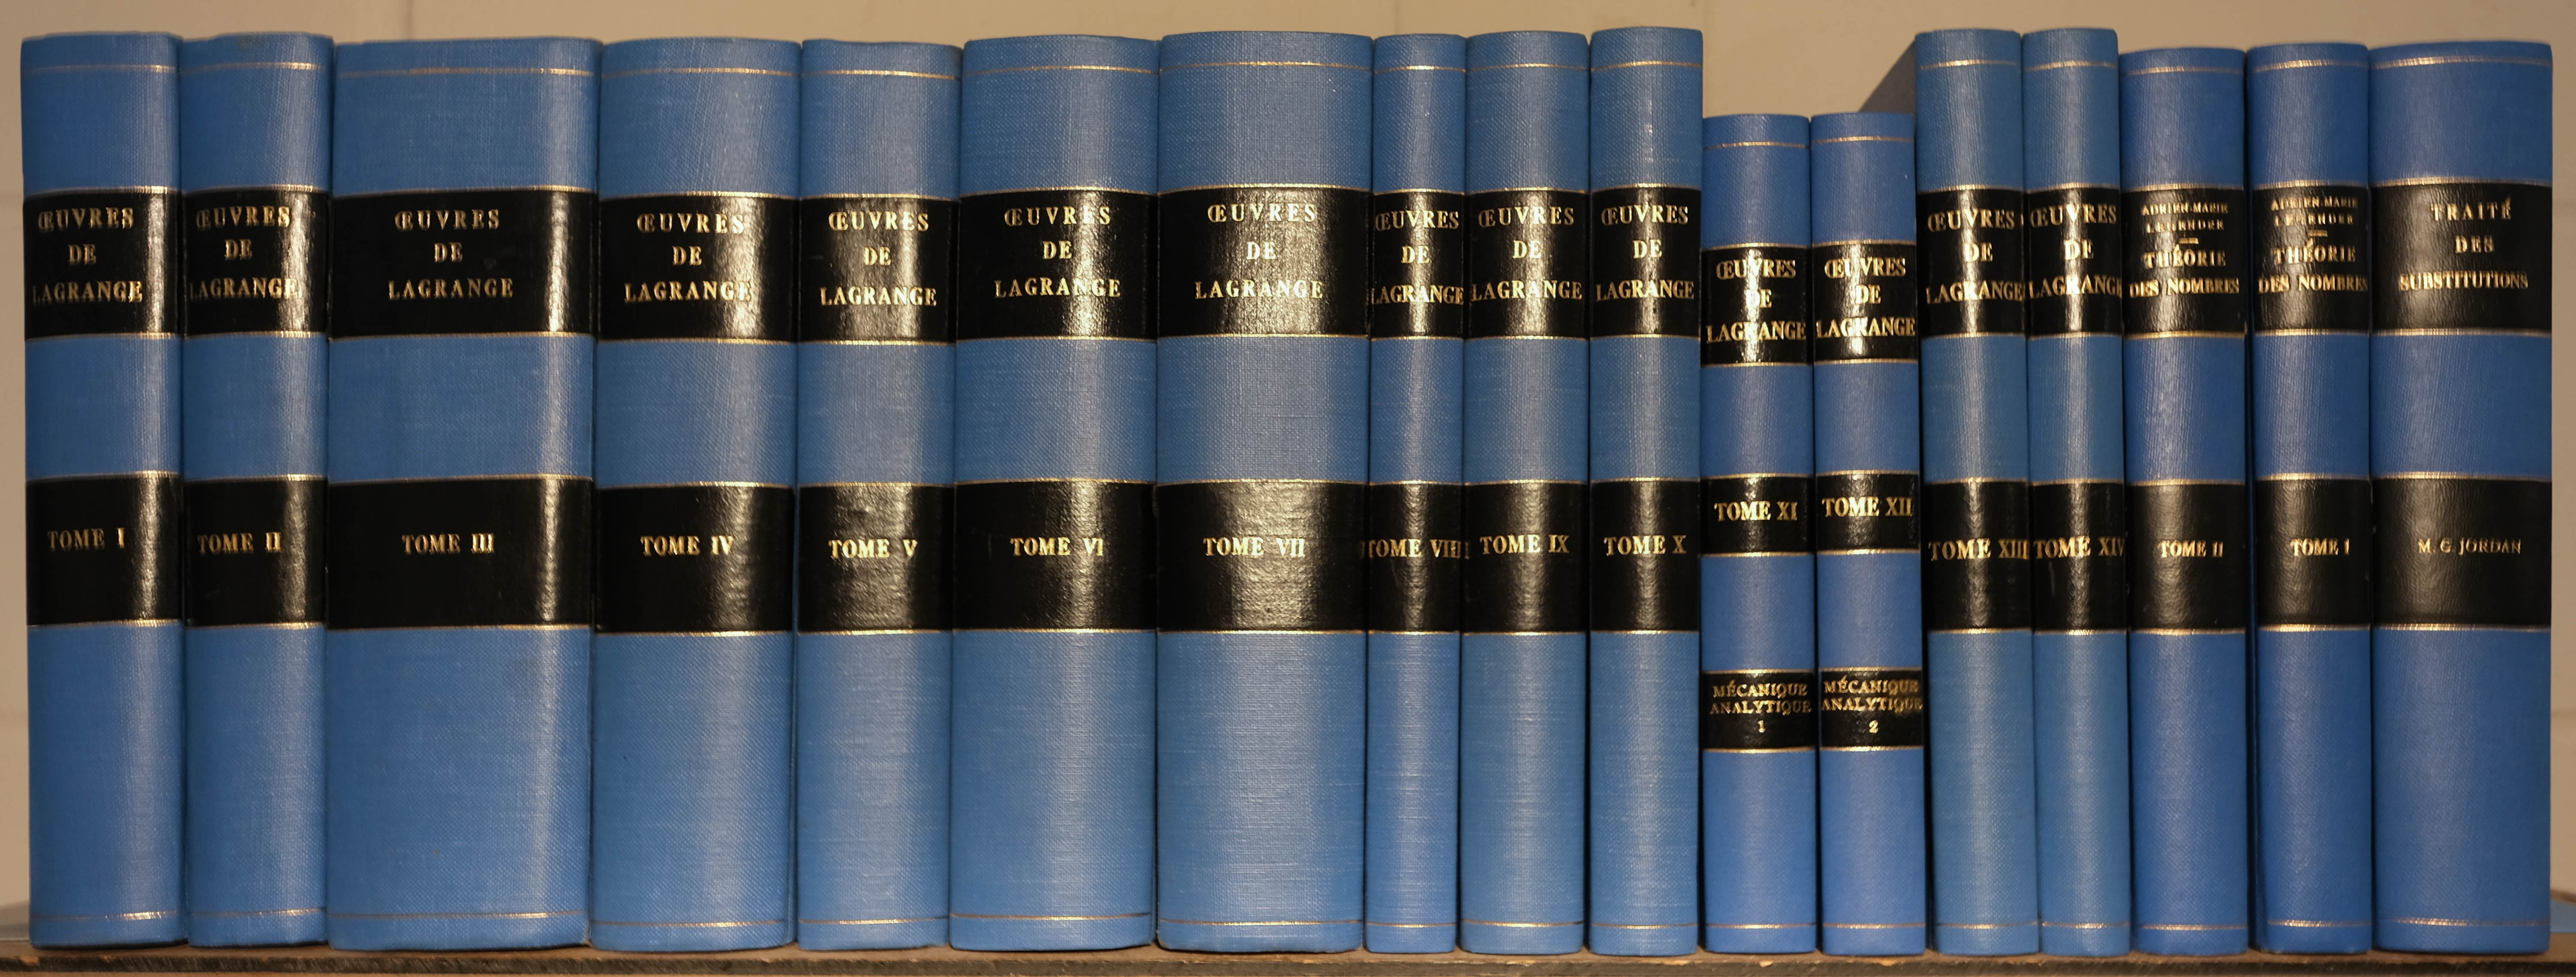 Lagrange (Joseph Louis de). Oeuvres, 14 volumes, 1867-92, & others